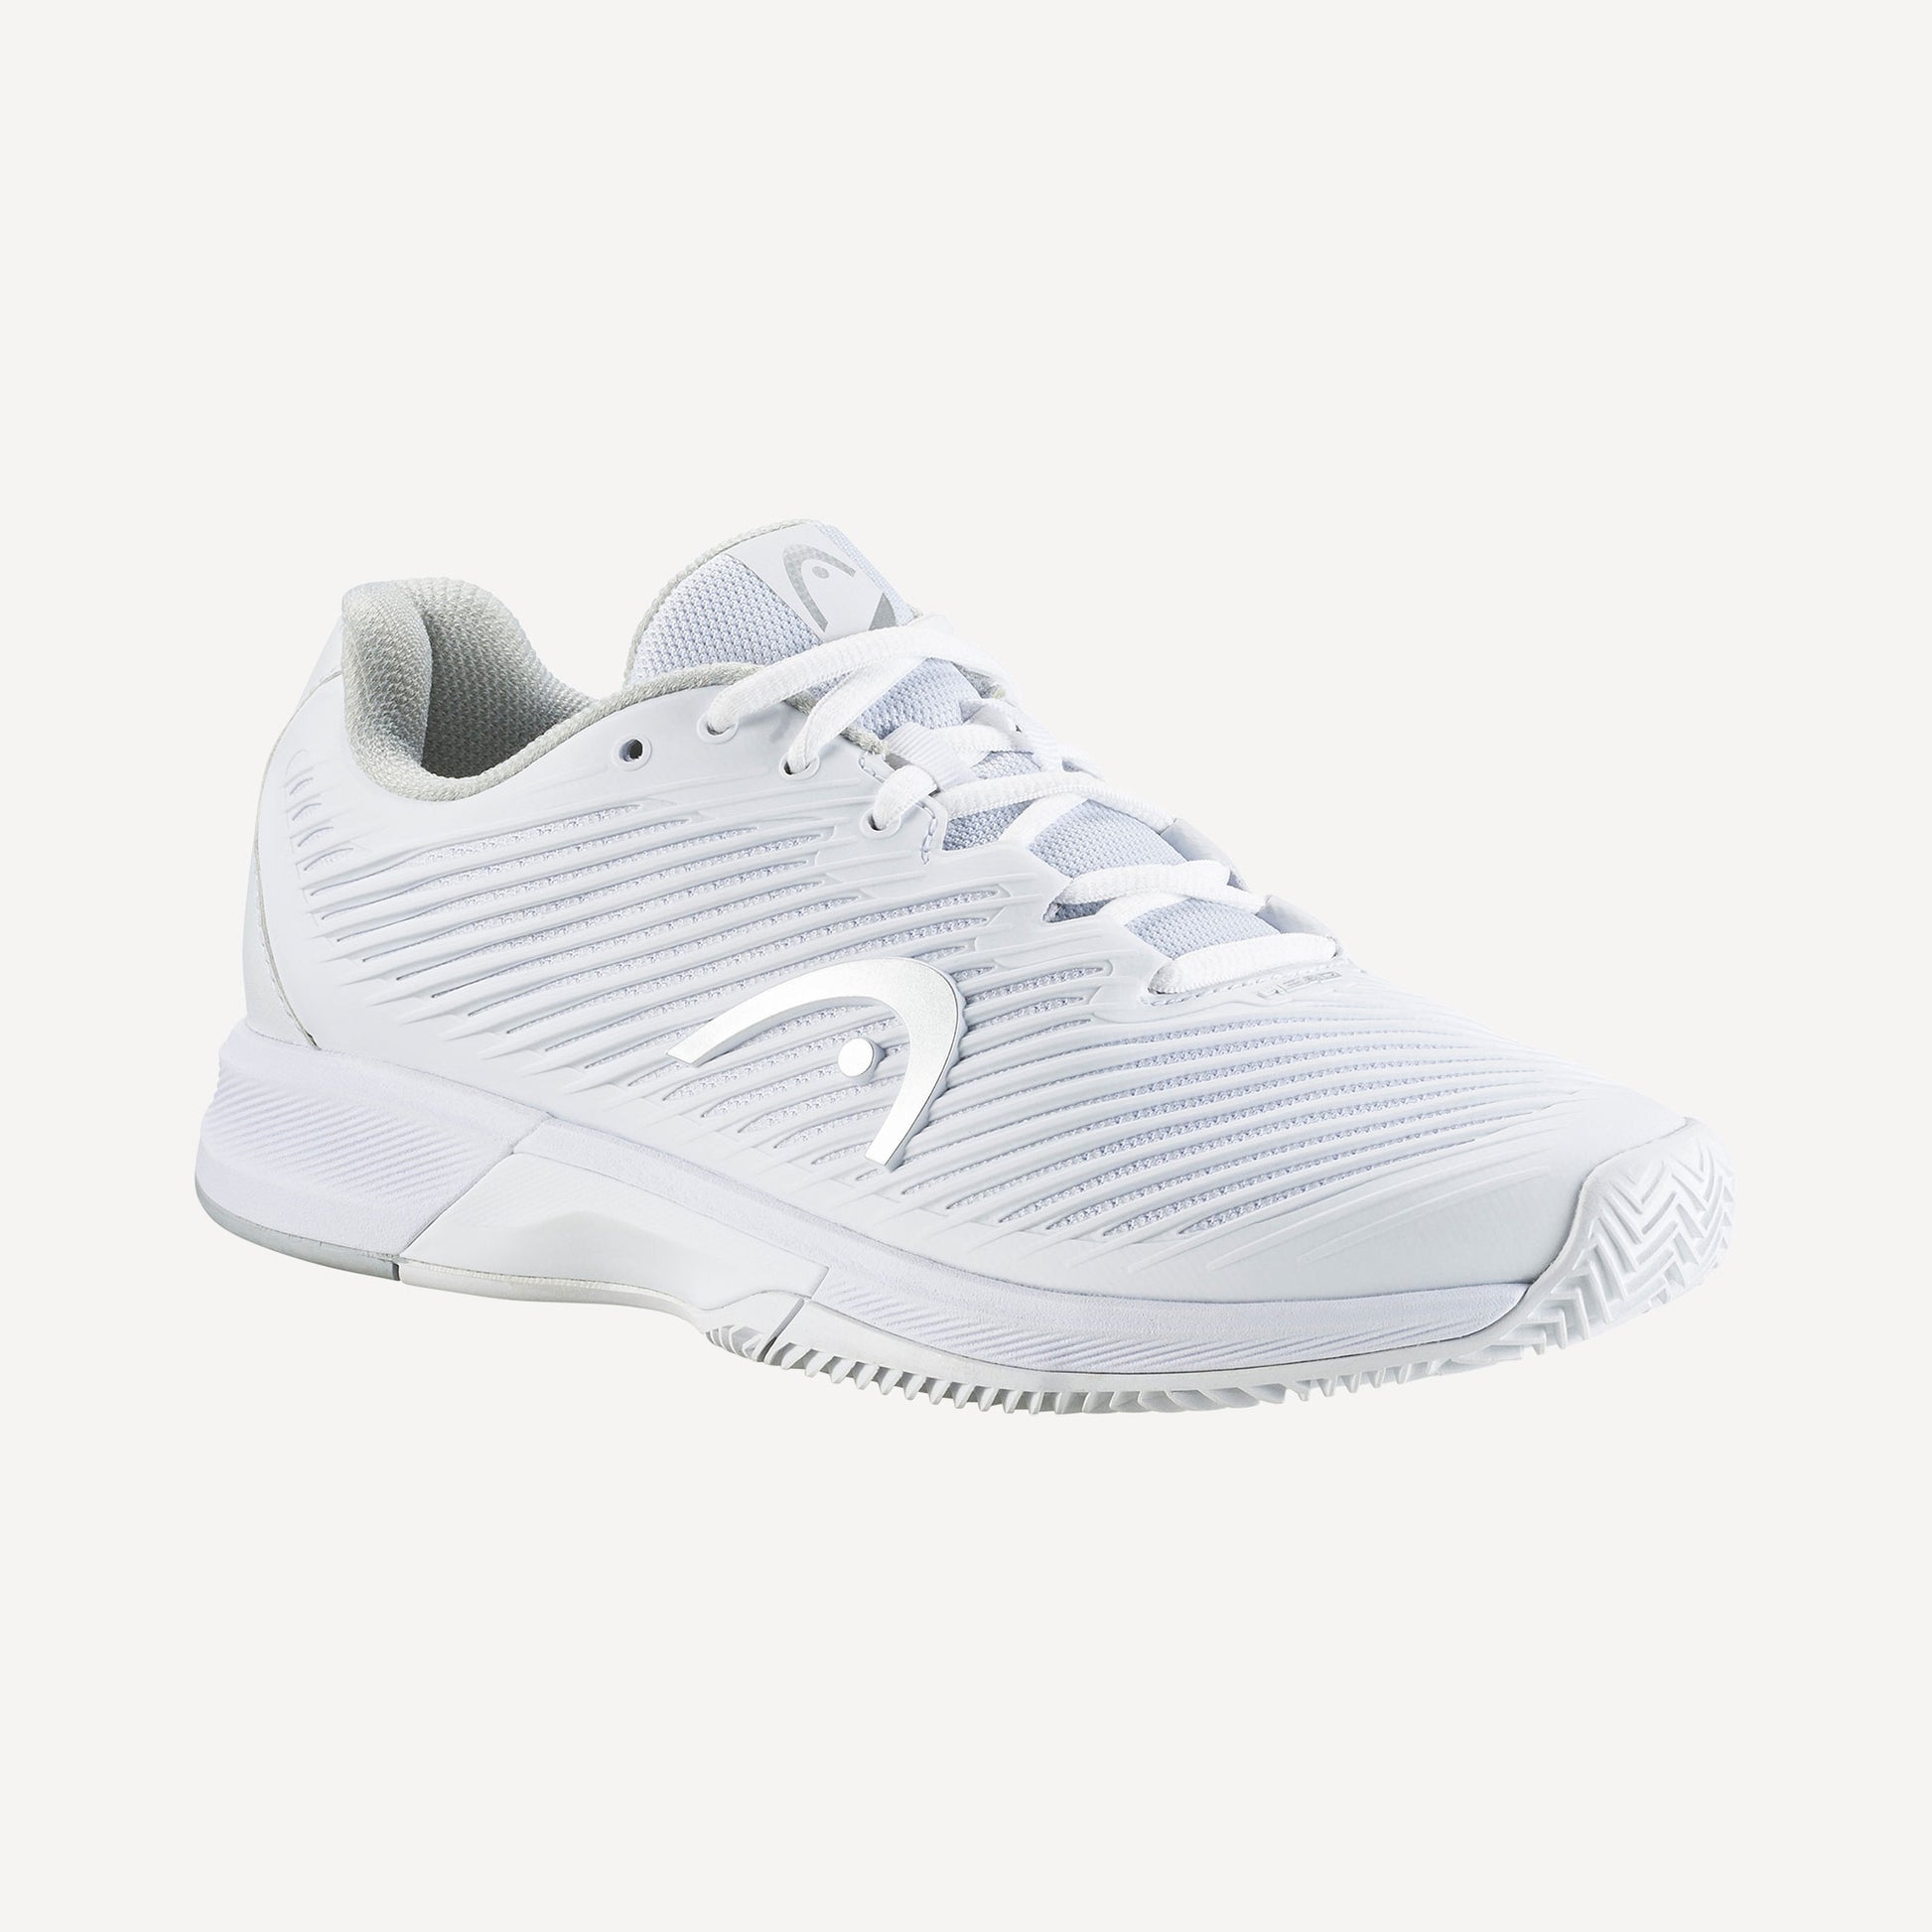 HEAD Revolt Pro 4.0 Women's Clay Court Tennis Shoes White (1)